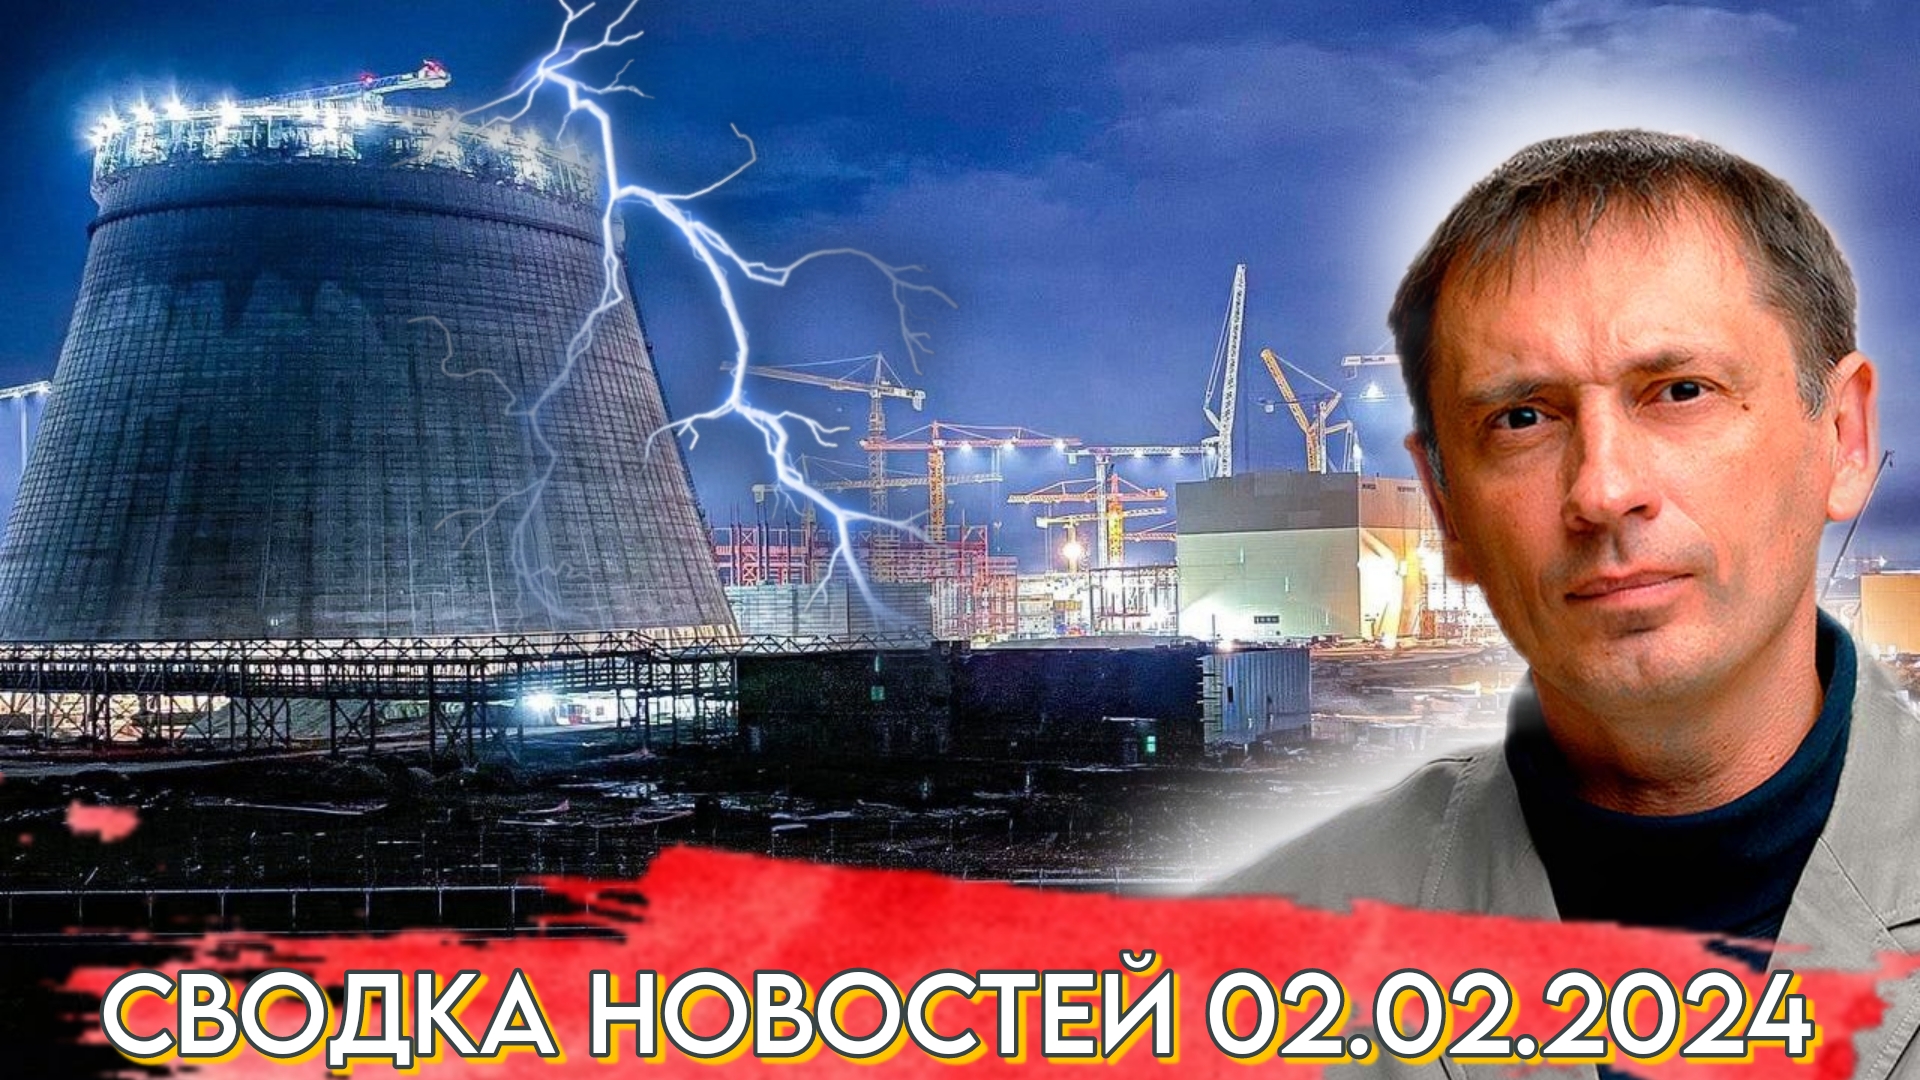 А победа длилась недолго: Энергоблок №2 Курской АЭС выведен из режима генерации электроэнергии